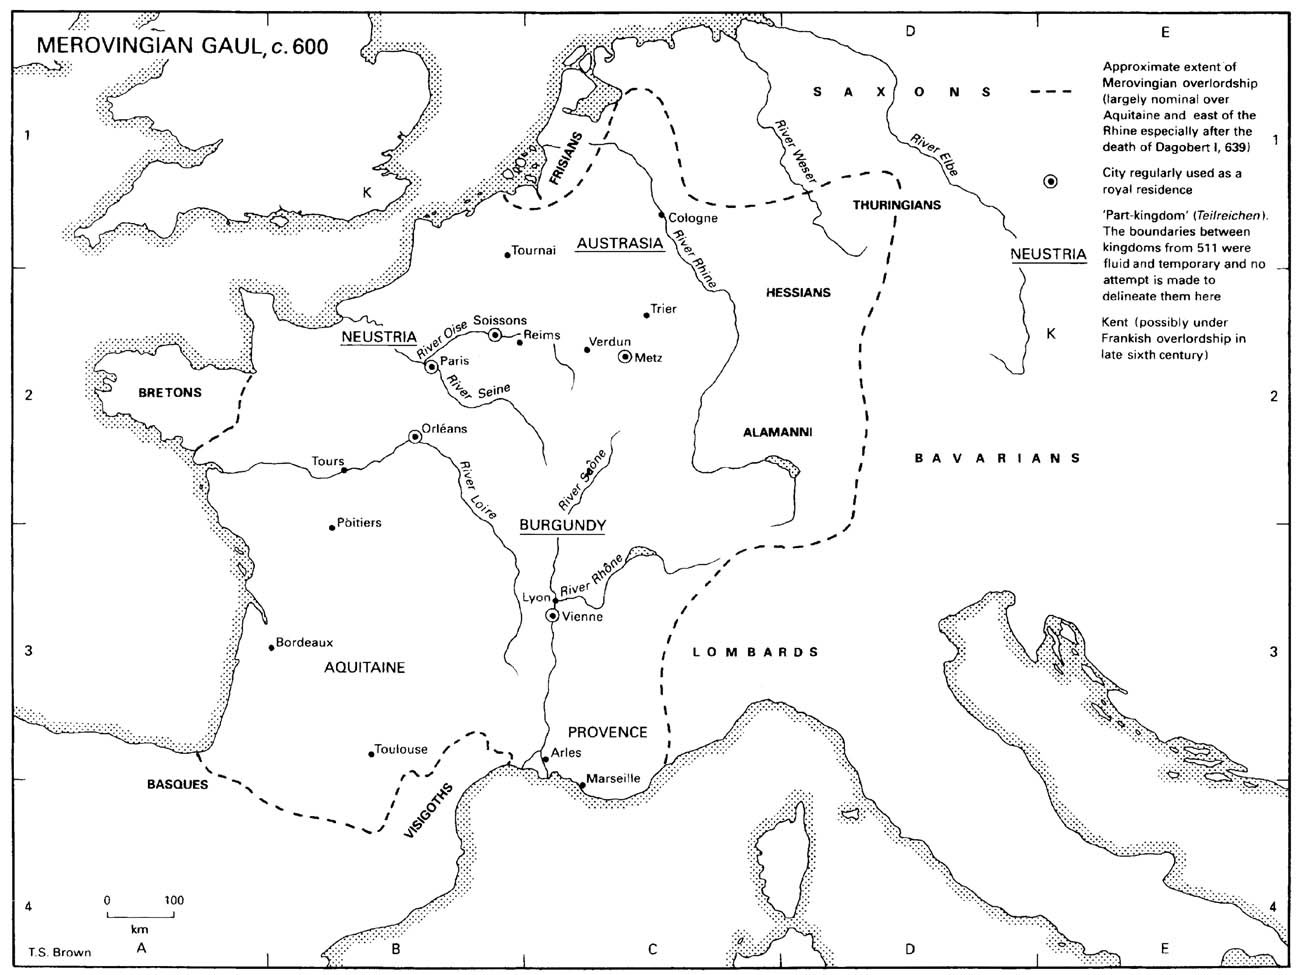 3. Merovingian Gaul, c.600